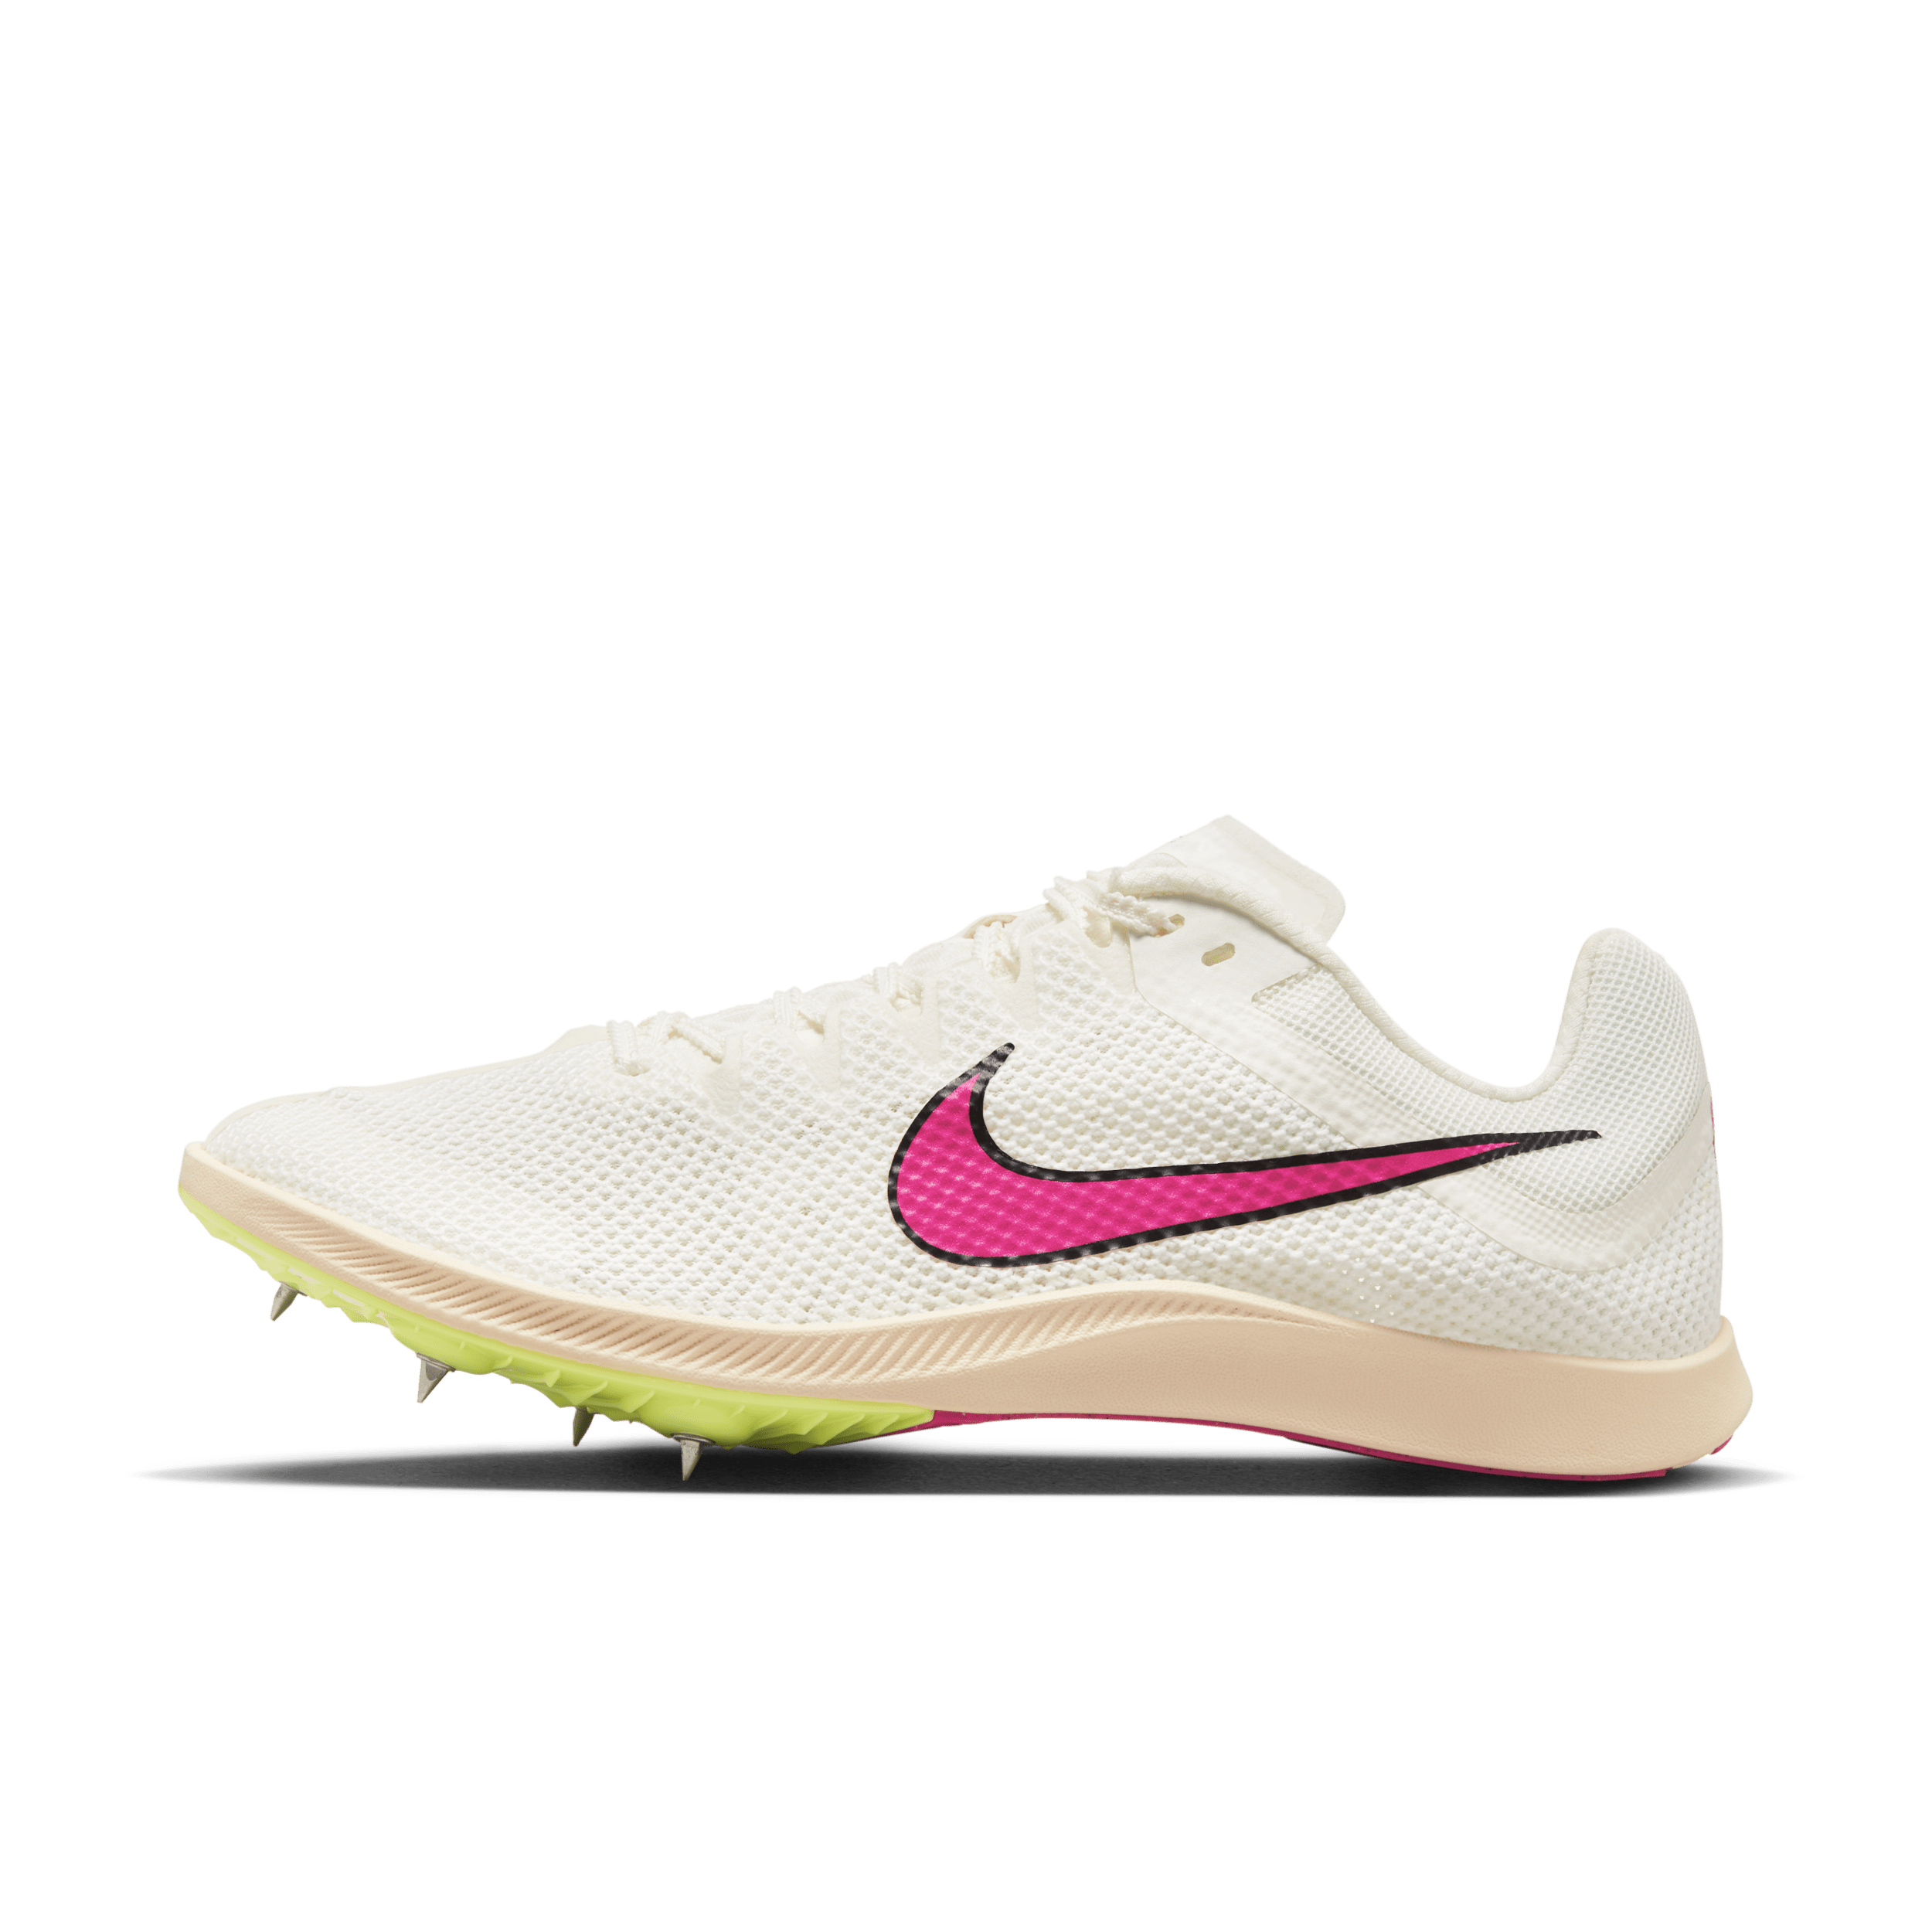 Scarpa chiodata da fondo su pista Nike Rival Distance - Bianco